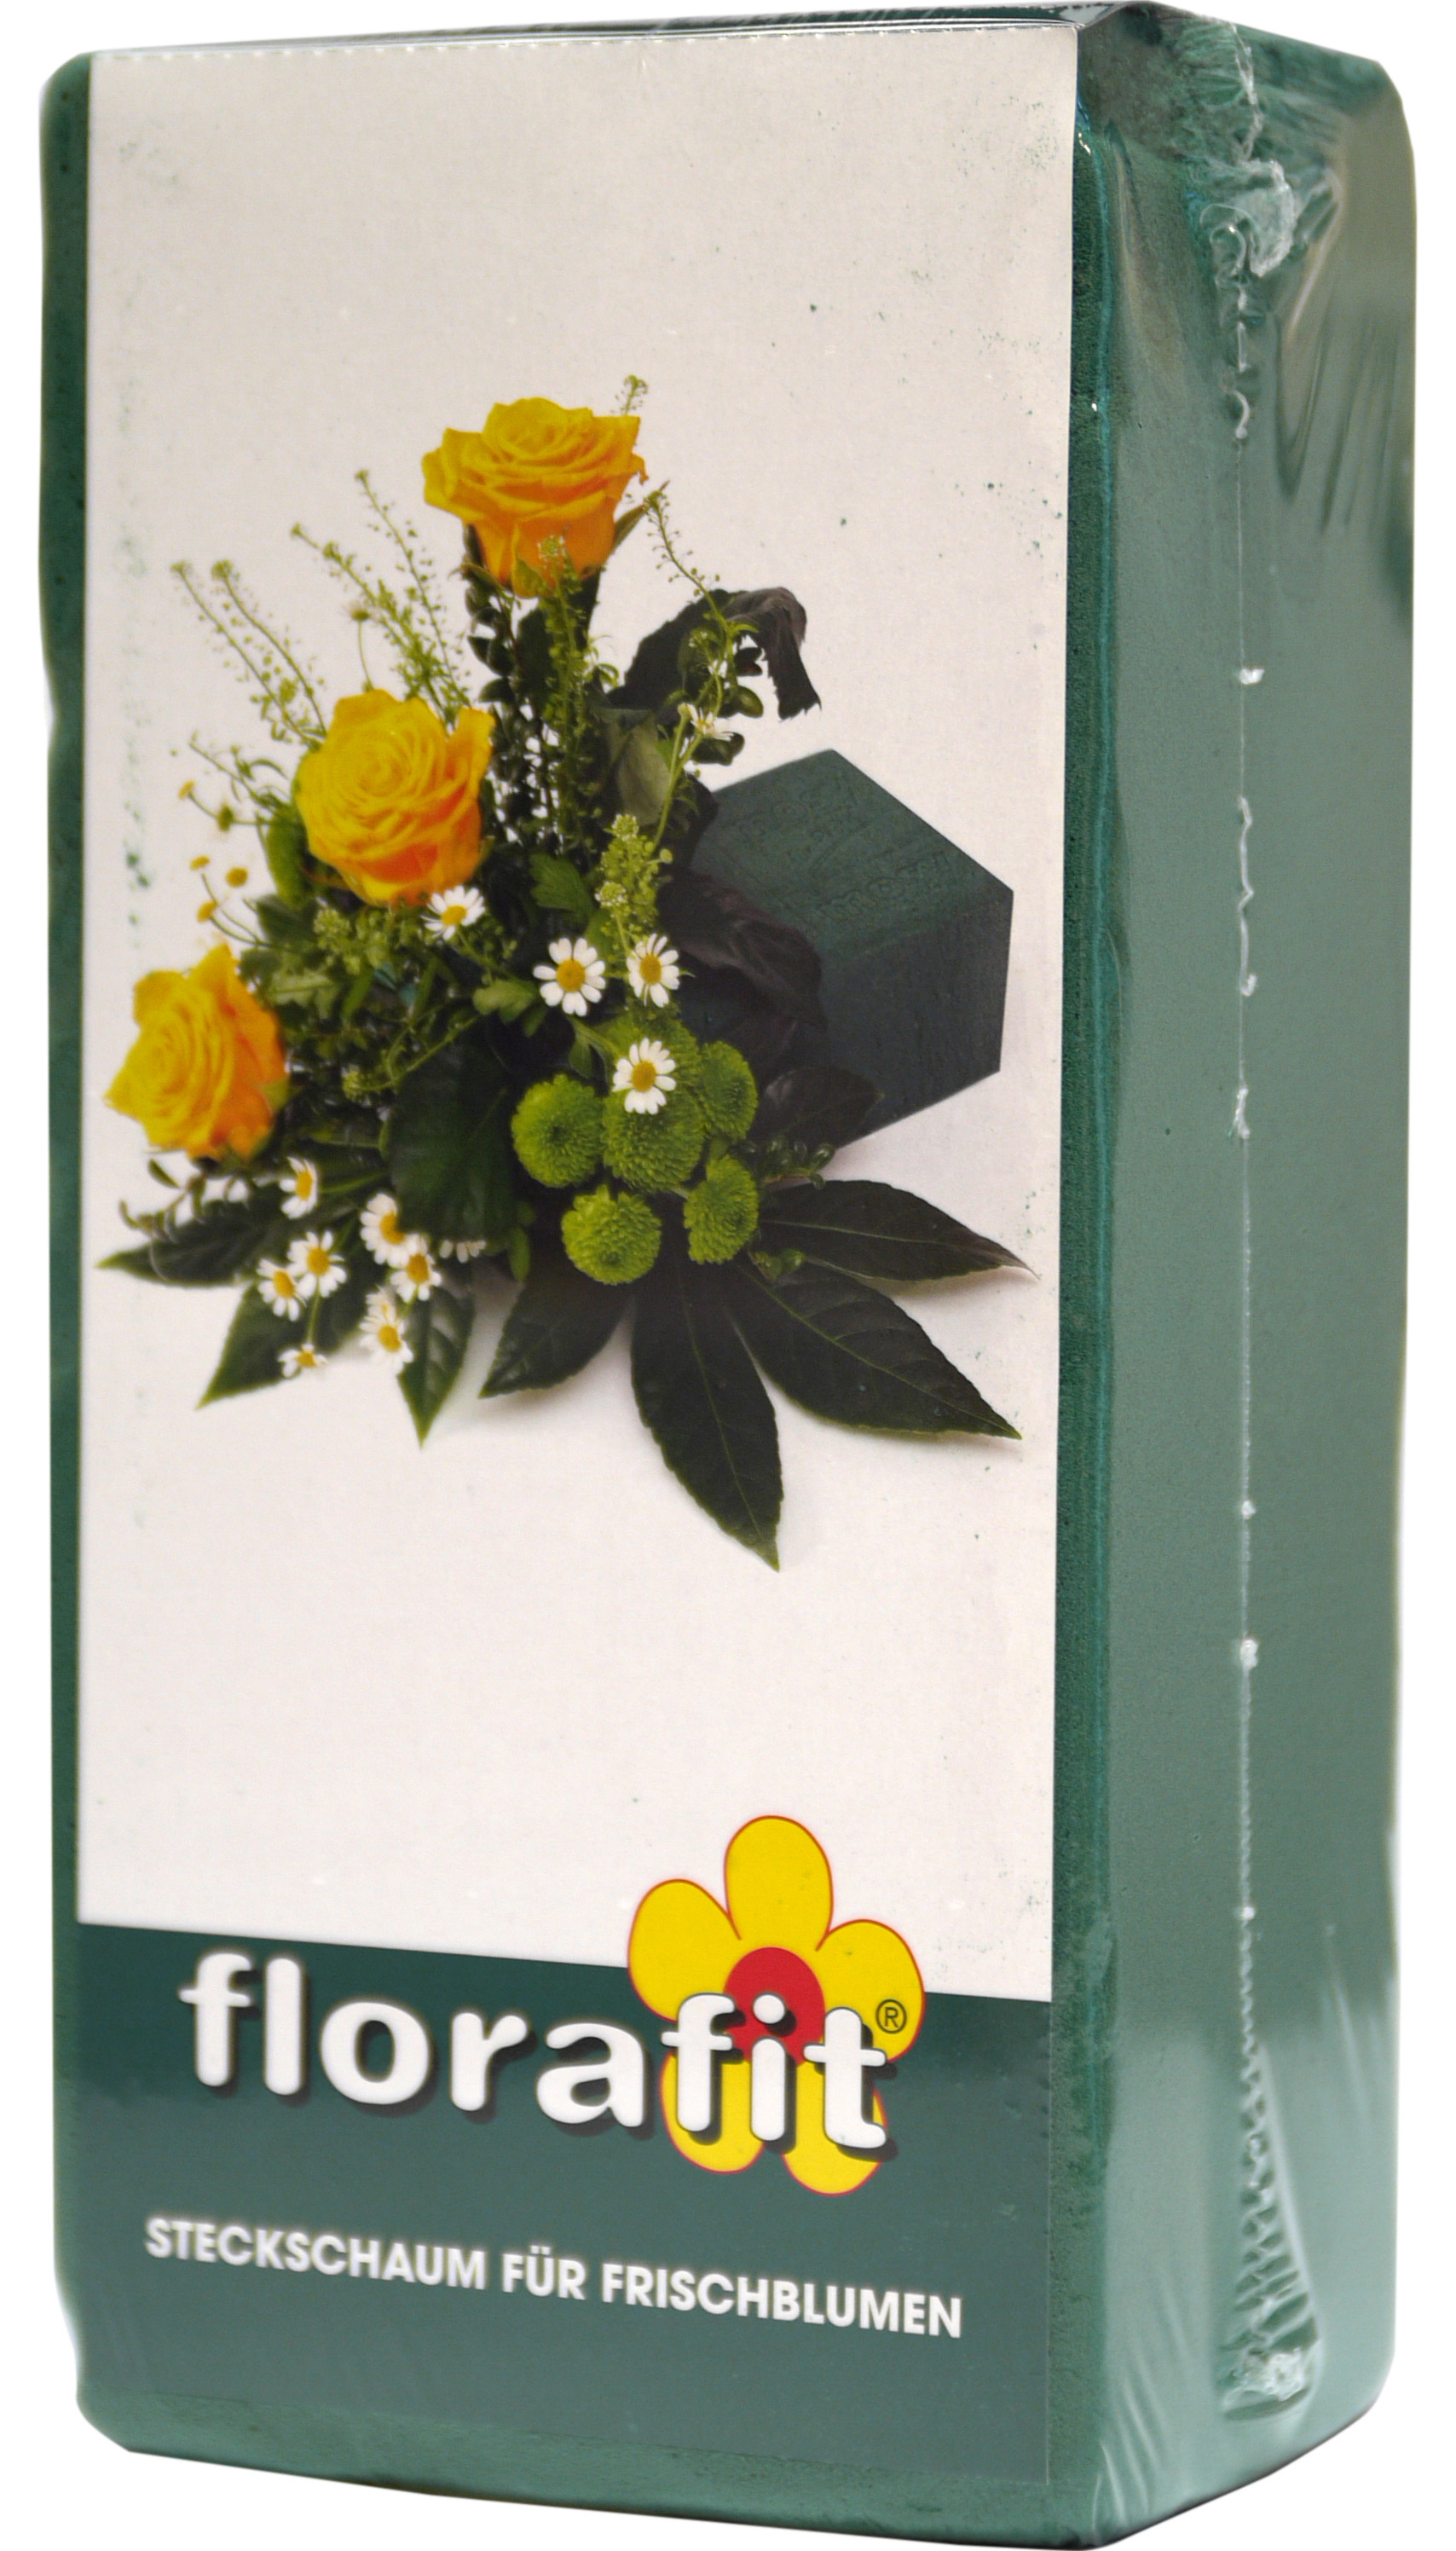 02275 - florafit Steckschaum für Frischblumen